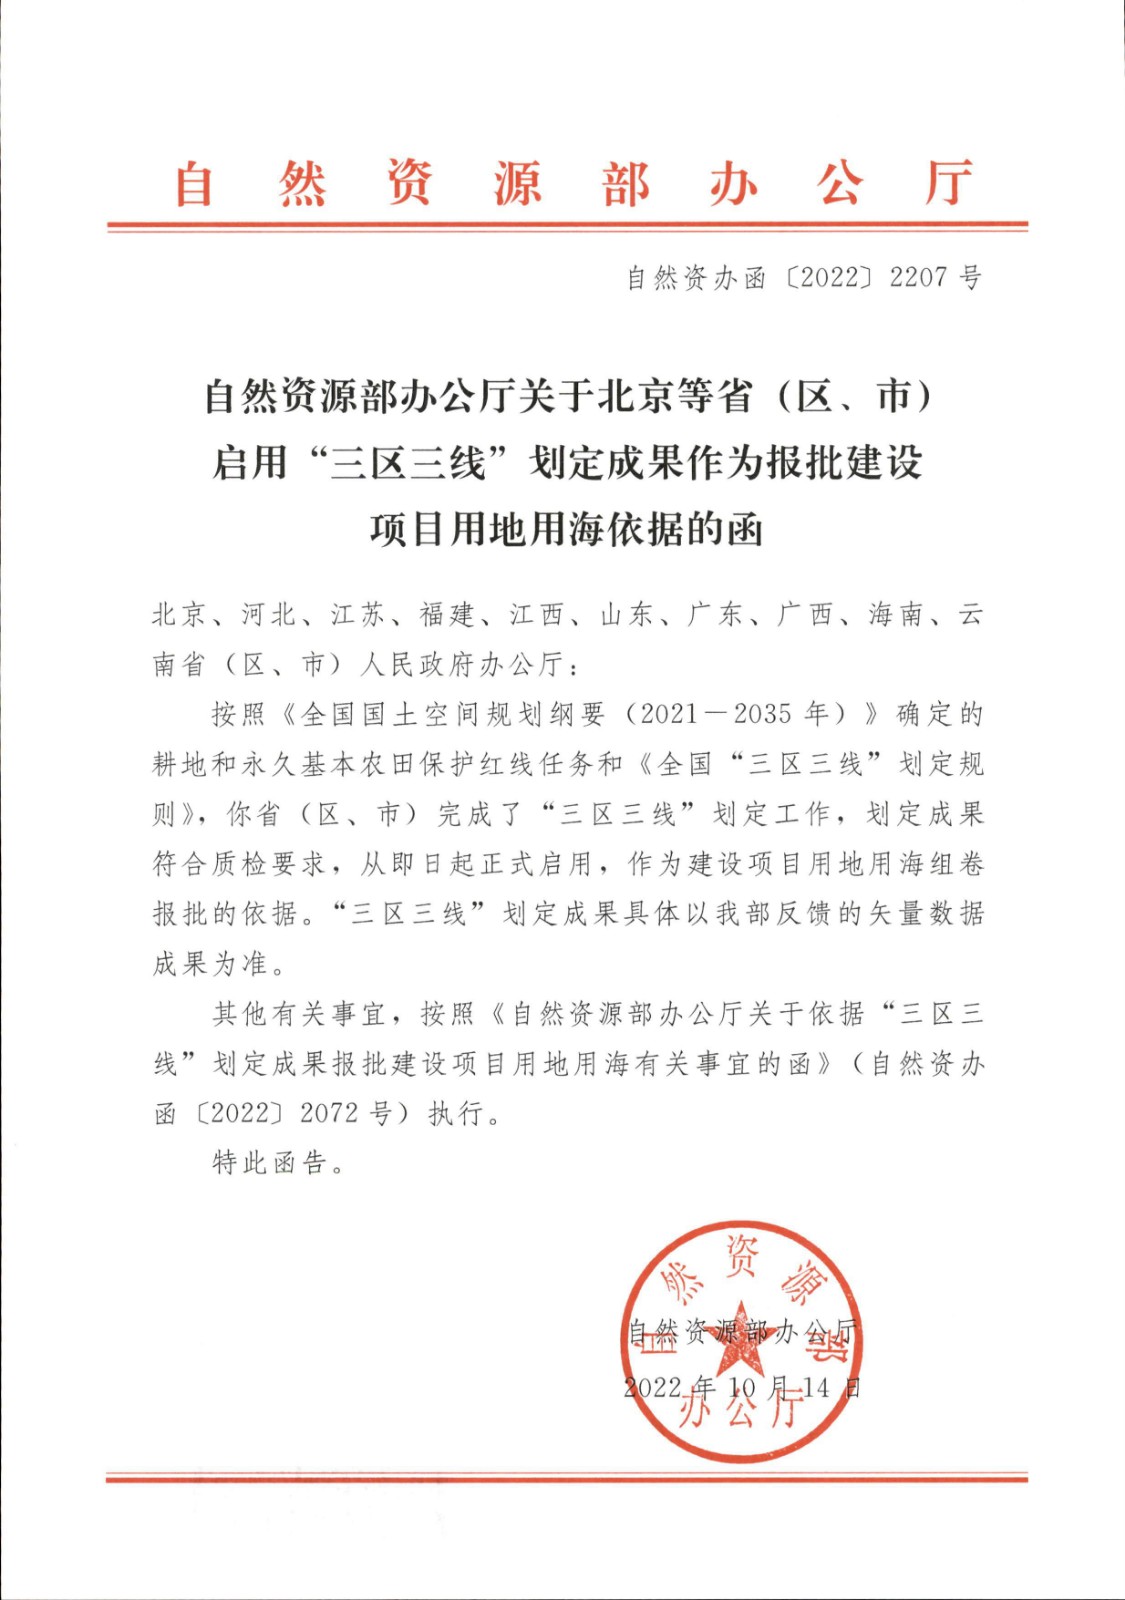 自然资源部办公厅关于北京等省（区、市）启用“三区三线”划定成果作为报批建设项目用地用海依据的函